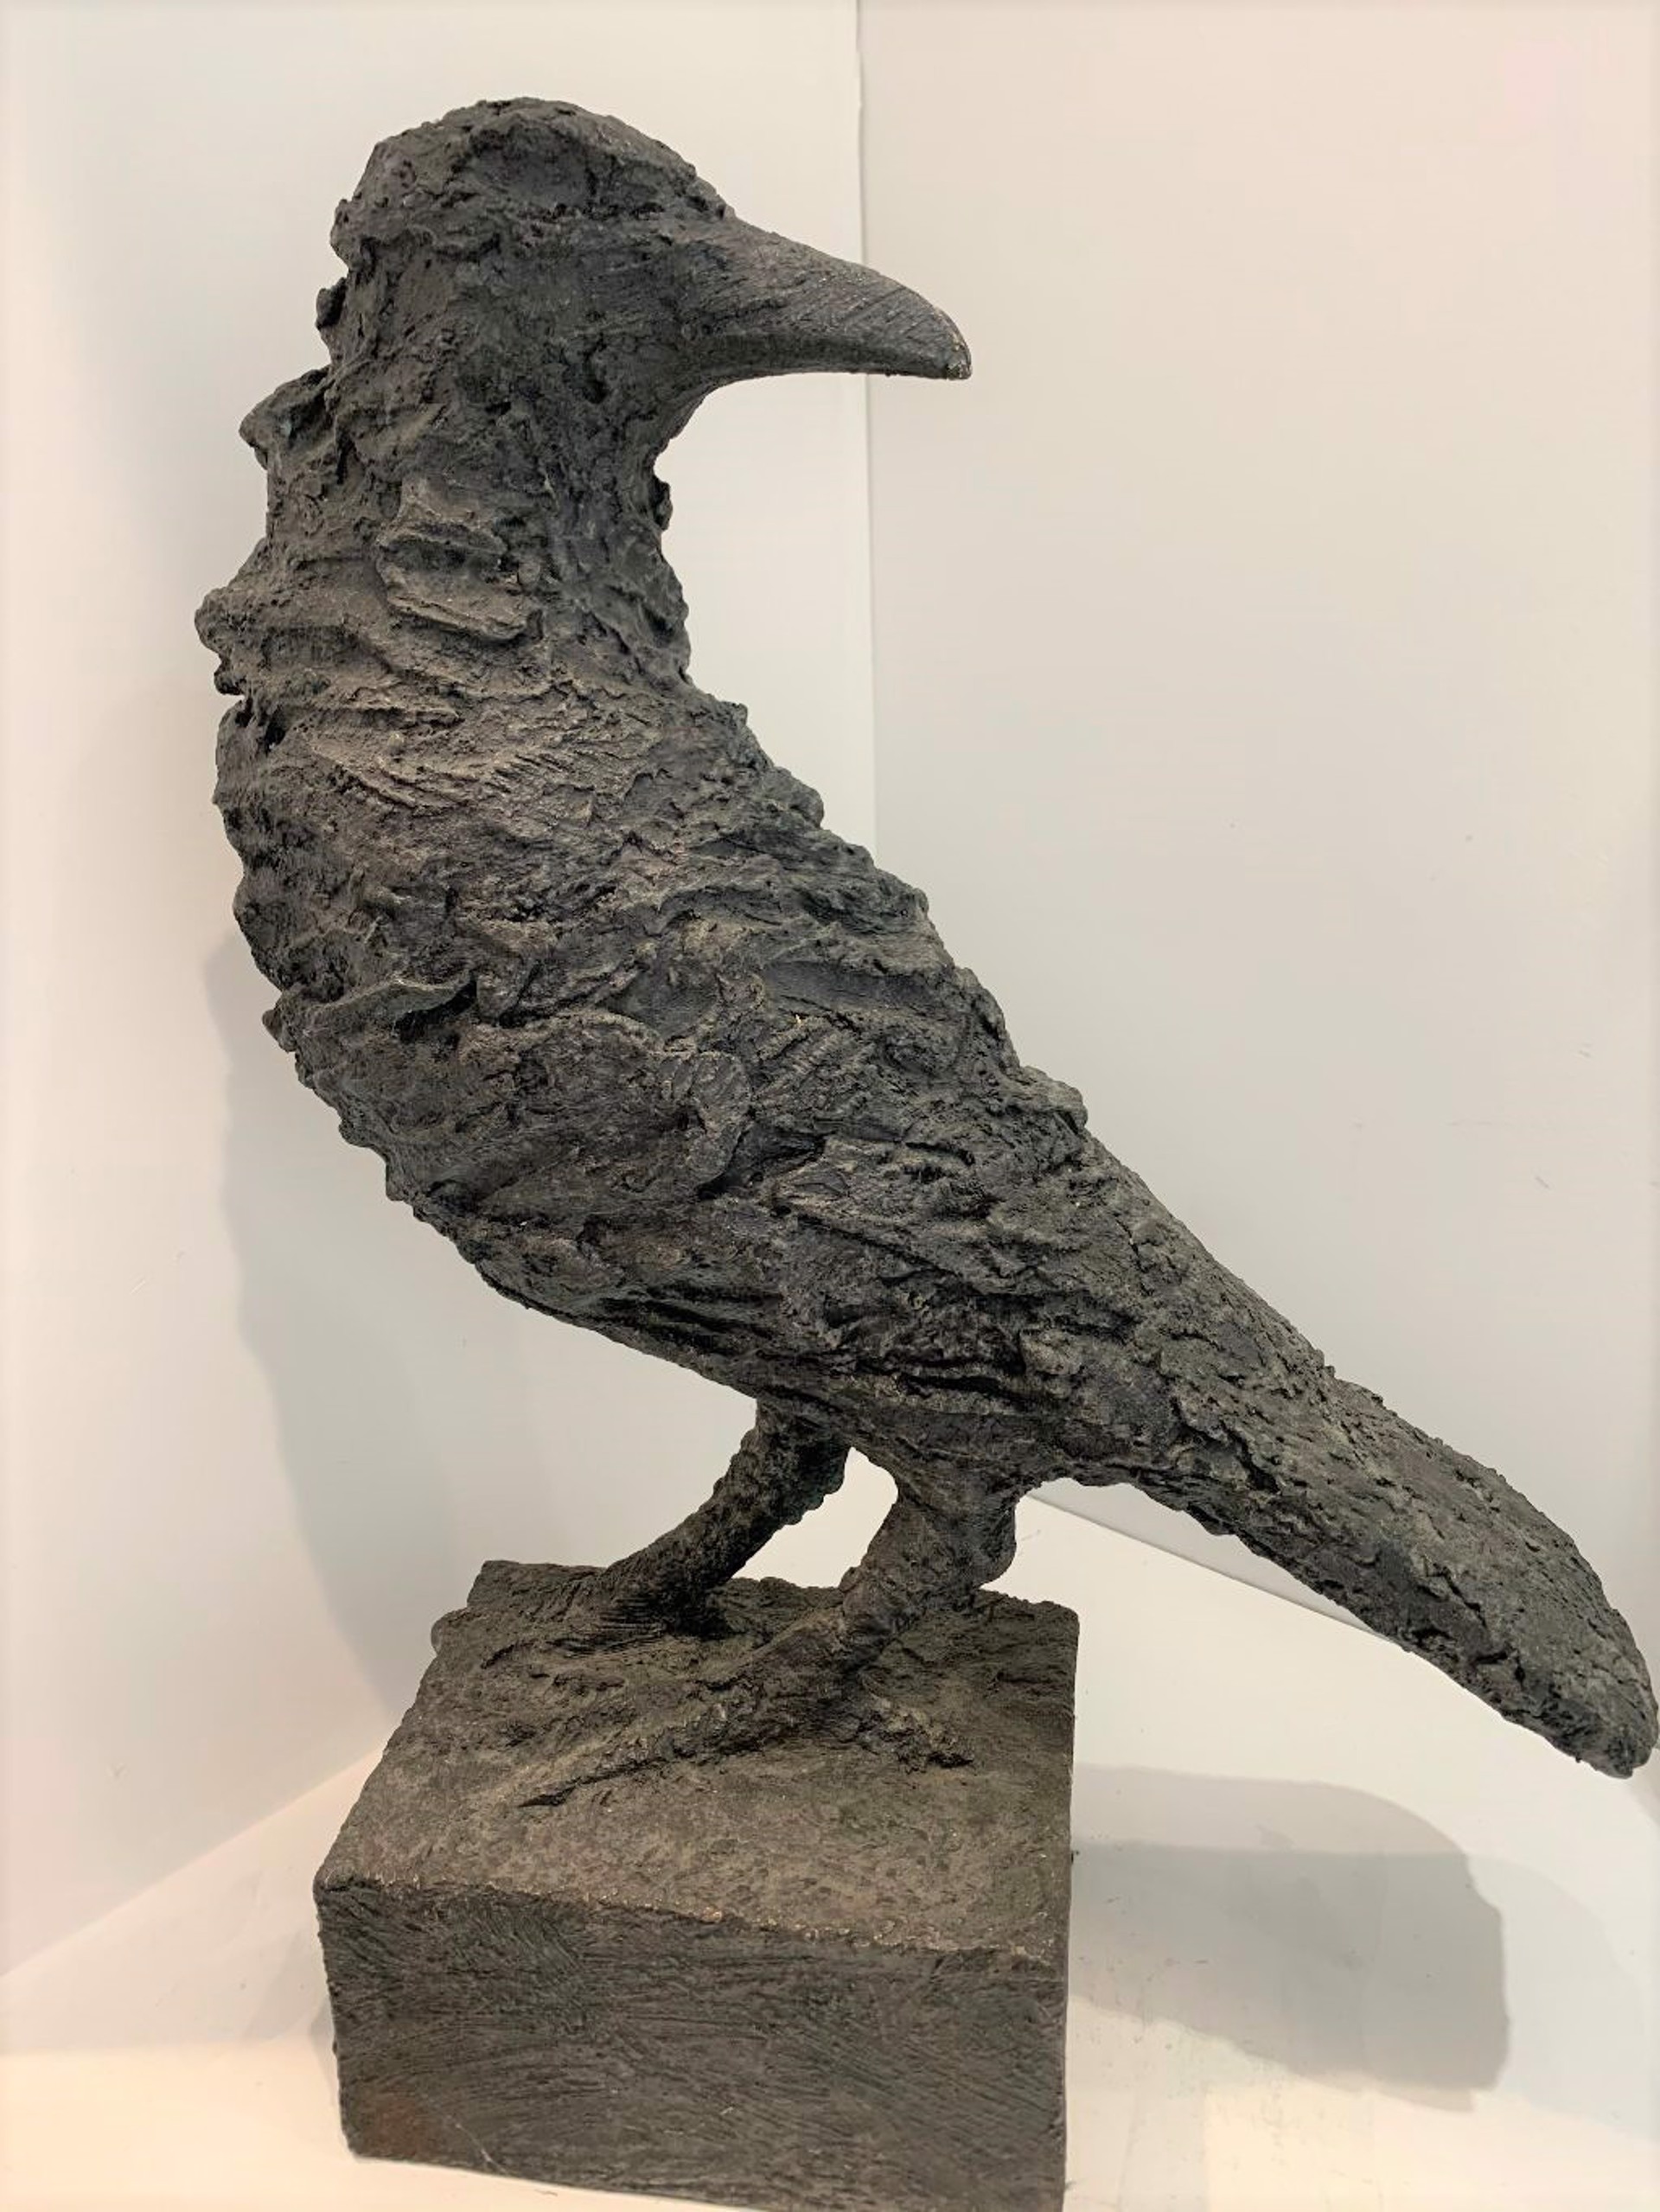 Raven by Gustavo Torres